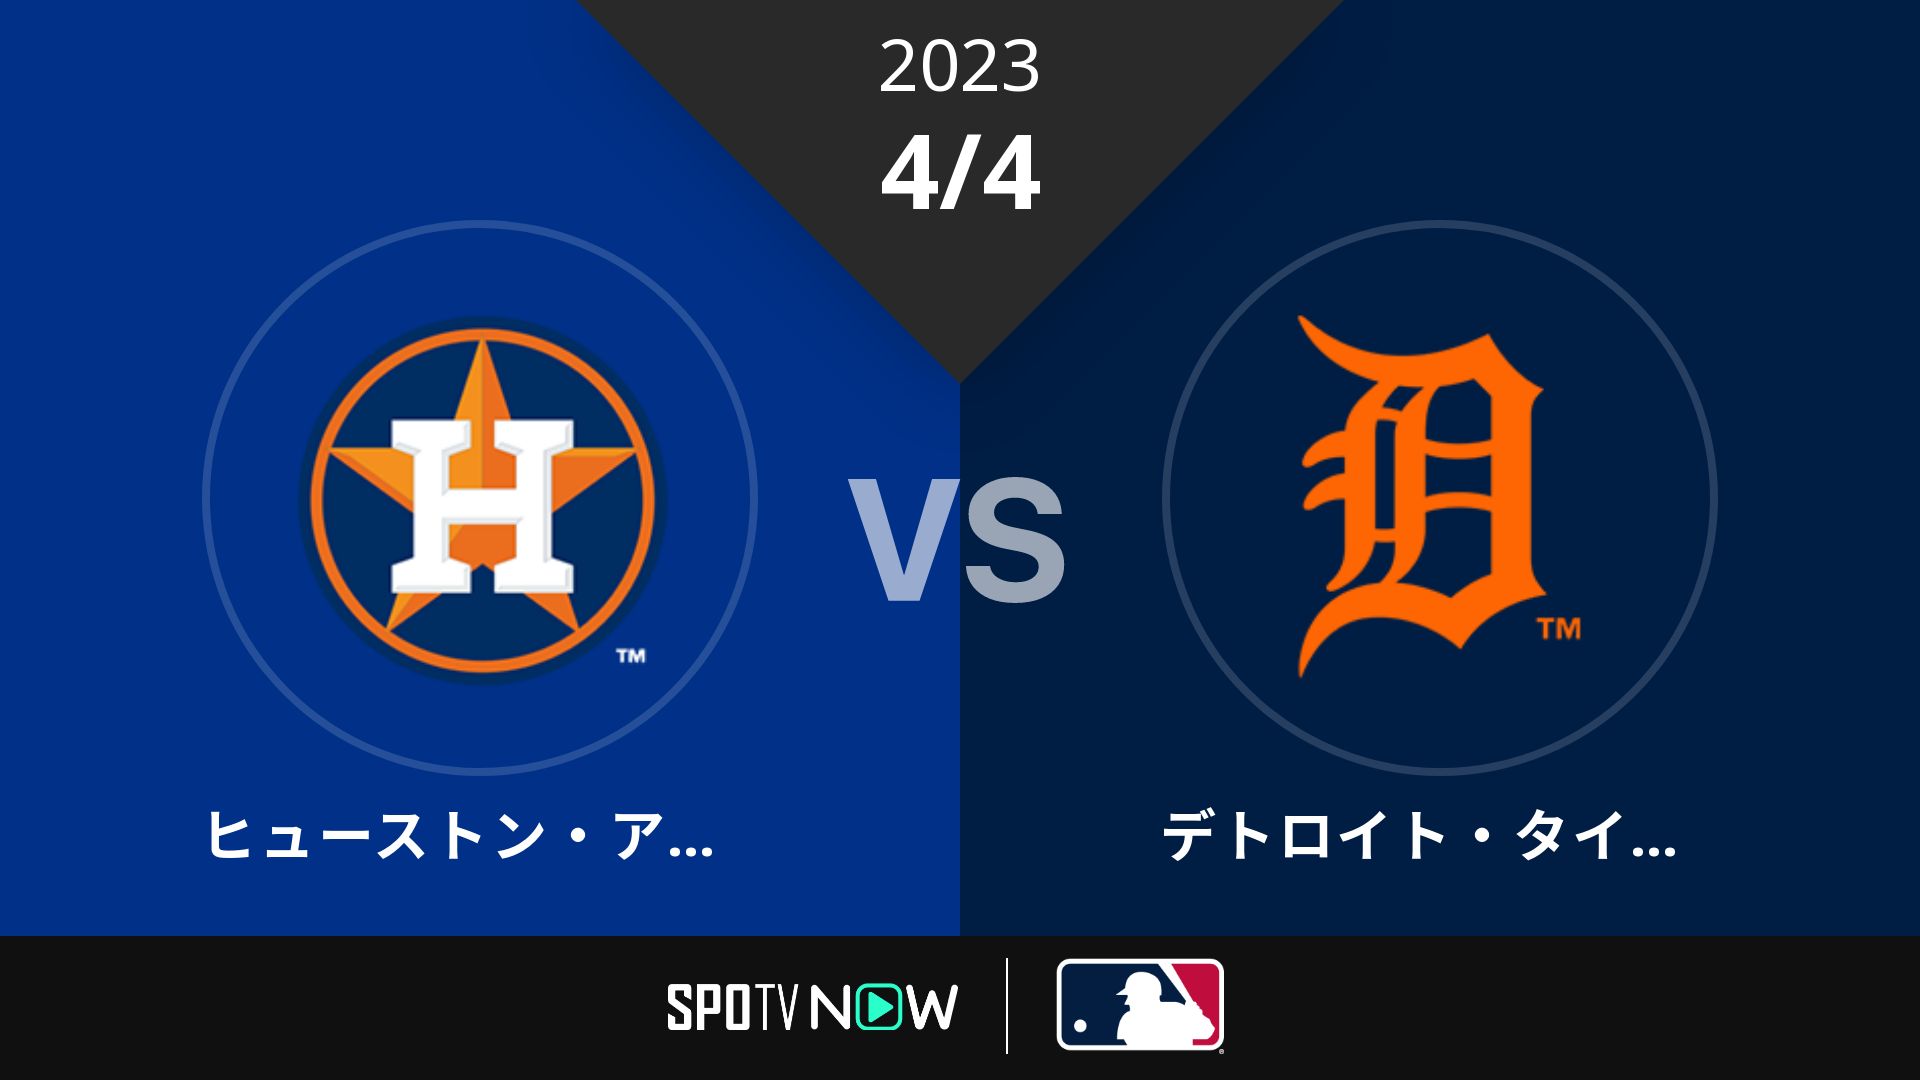 2023/4/4 アストロズ vs タイガース [MLB]